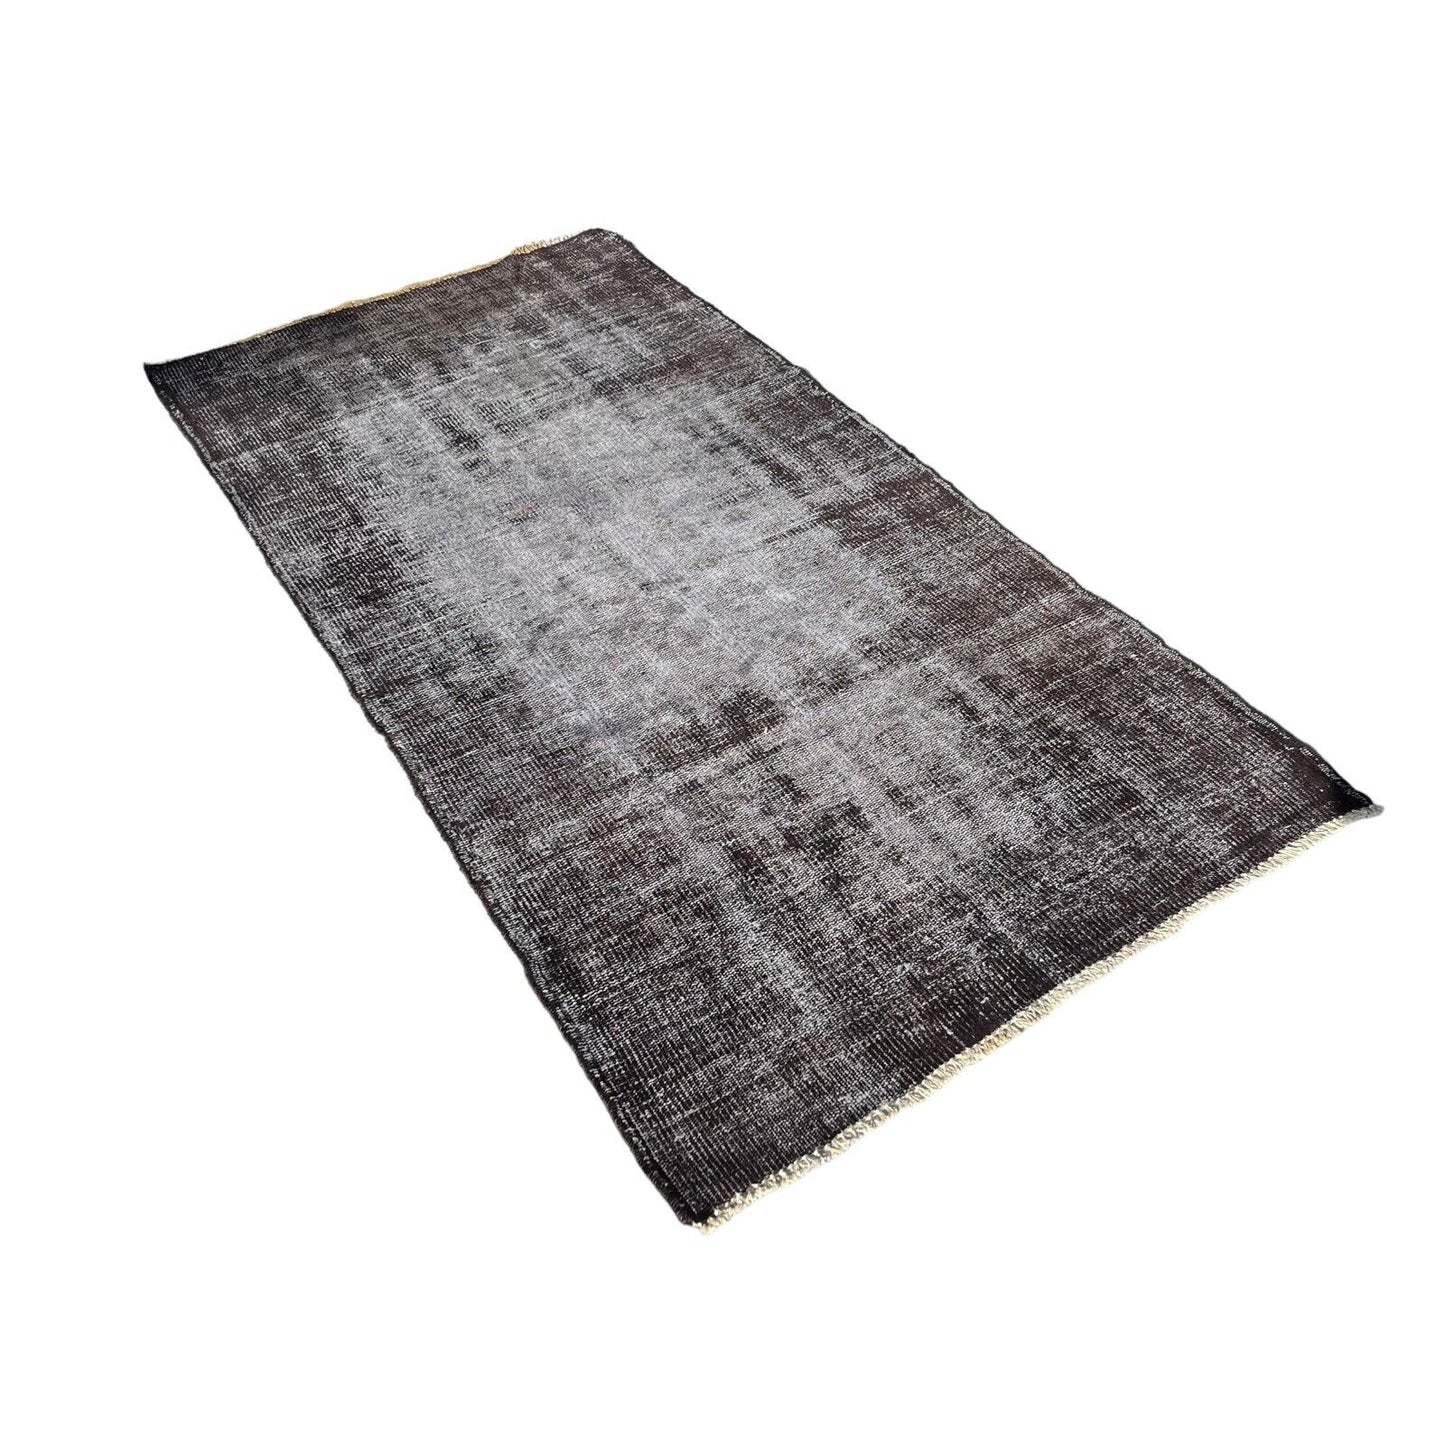 Distressed Overdyed Türkischer Teppich 200 x 100 cm Vintage Teppich